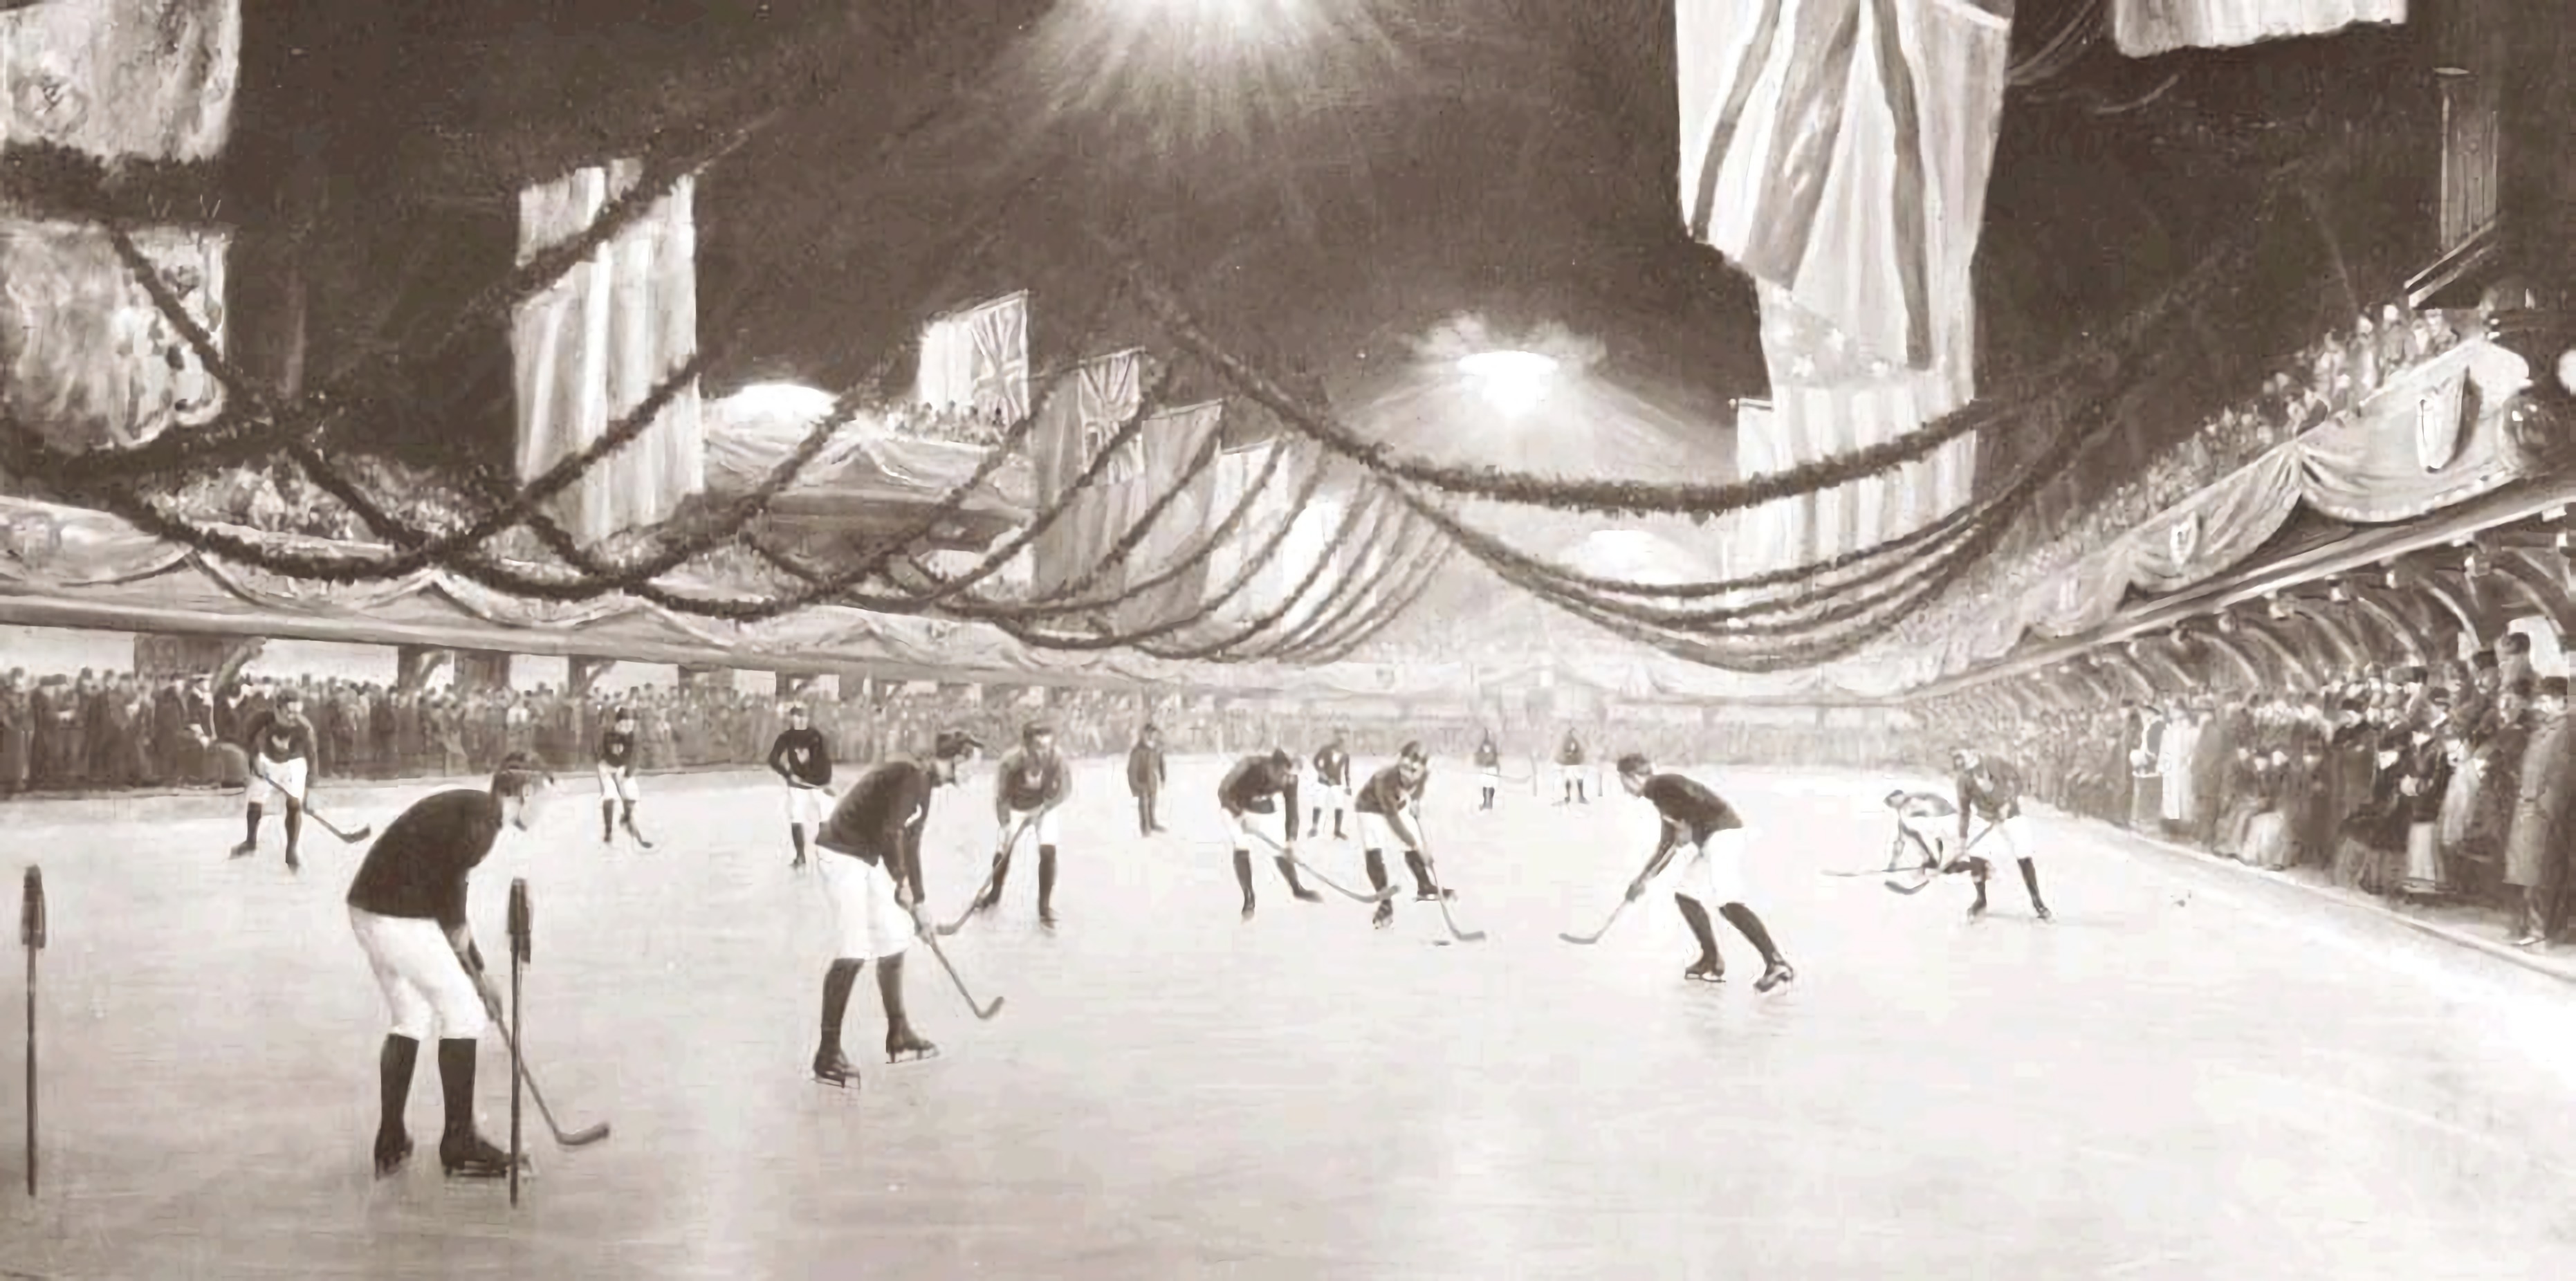 Хоккейный матч 1893 года на катке Виктория в Монреале, Канада